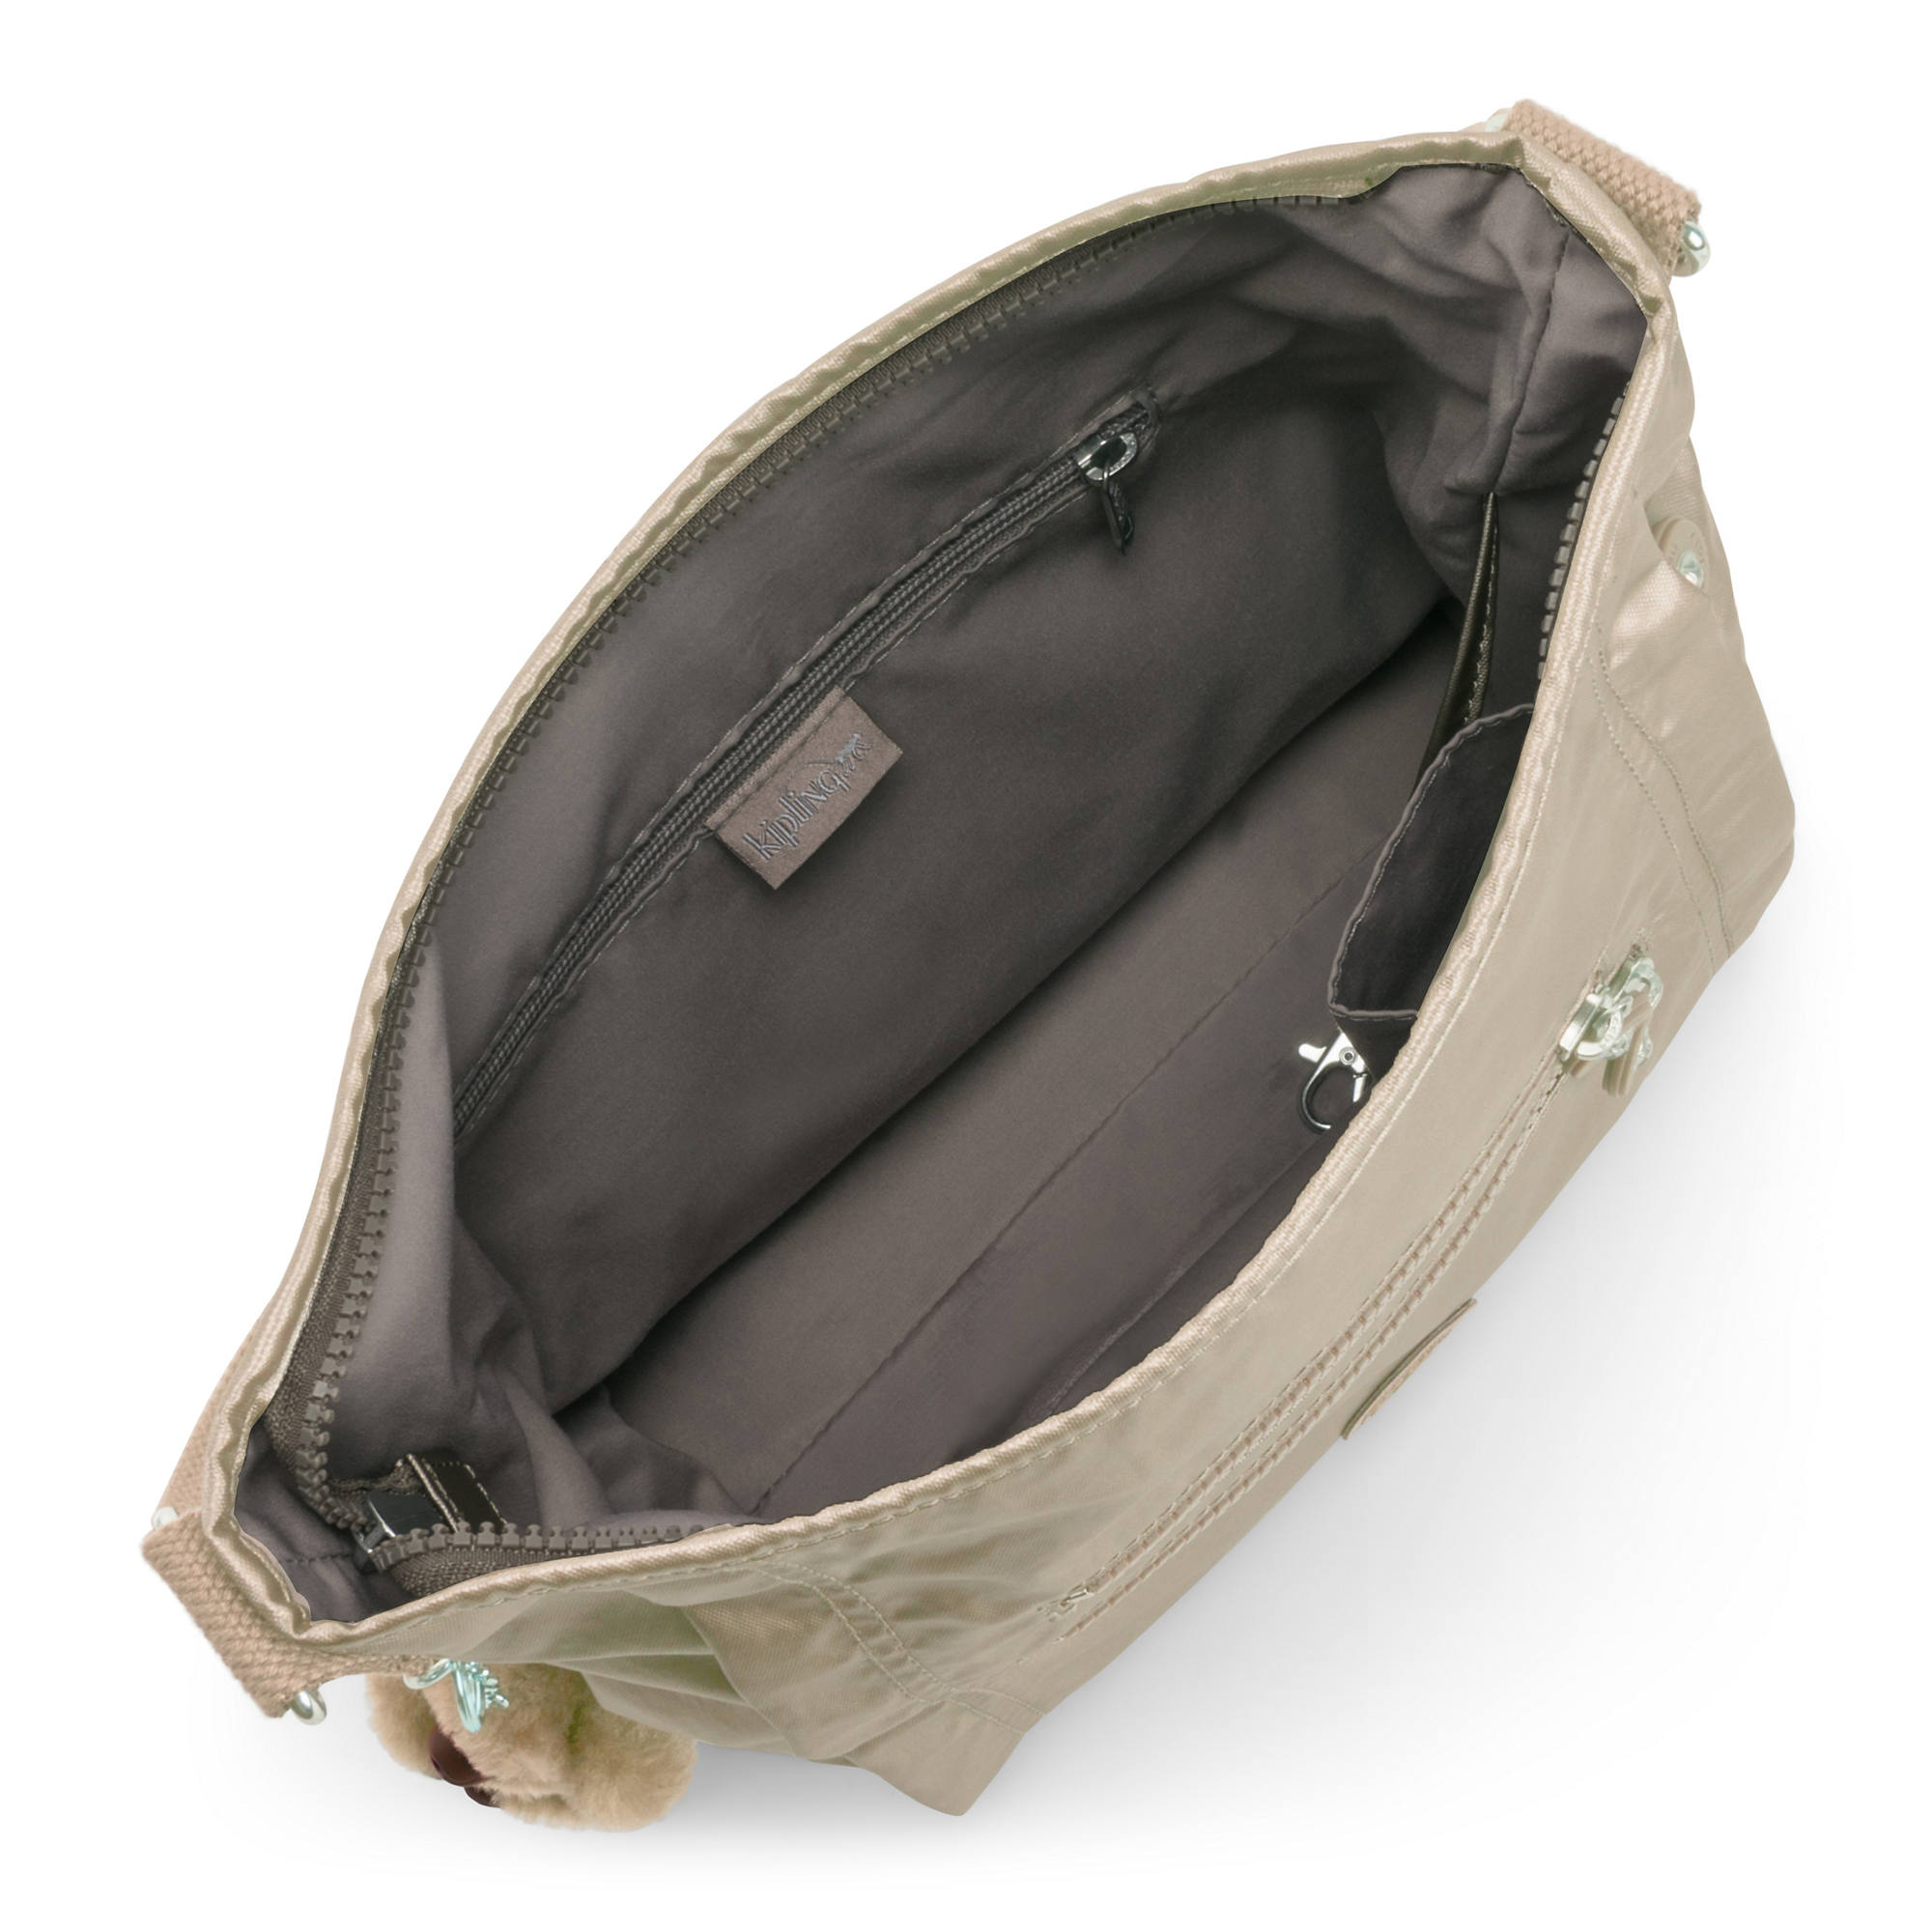 Kipling Belammie Handbag | eBay